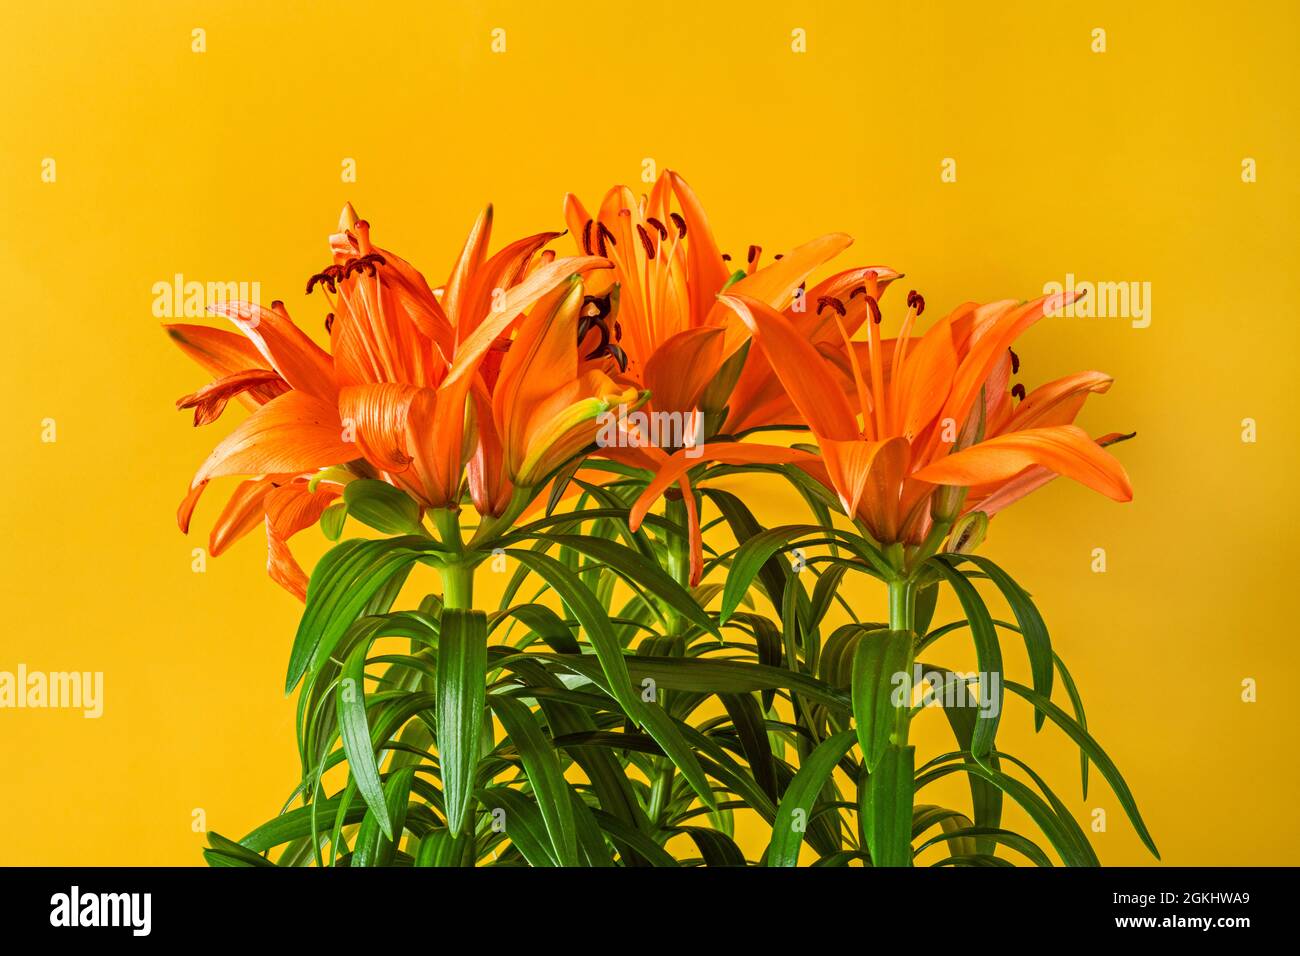 Gigli asiatici in piena fioritura arancione con fondo giallo brillante e steli con foglie verdi Foto Stock